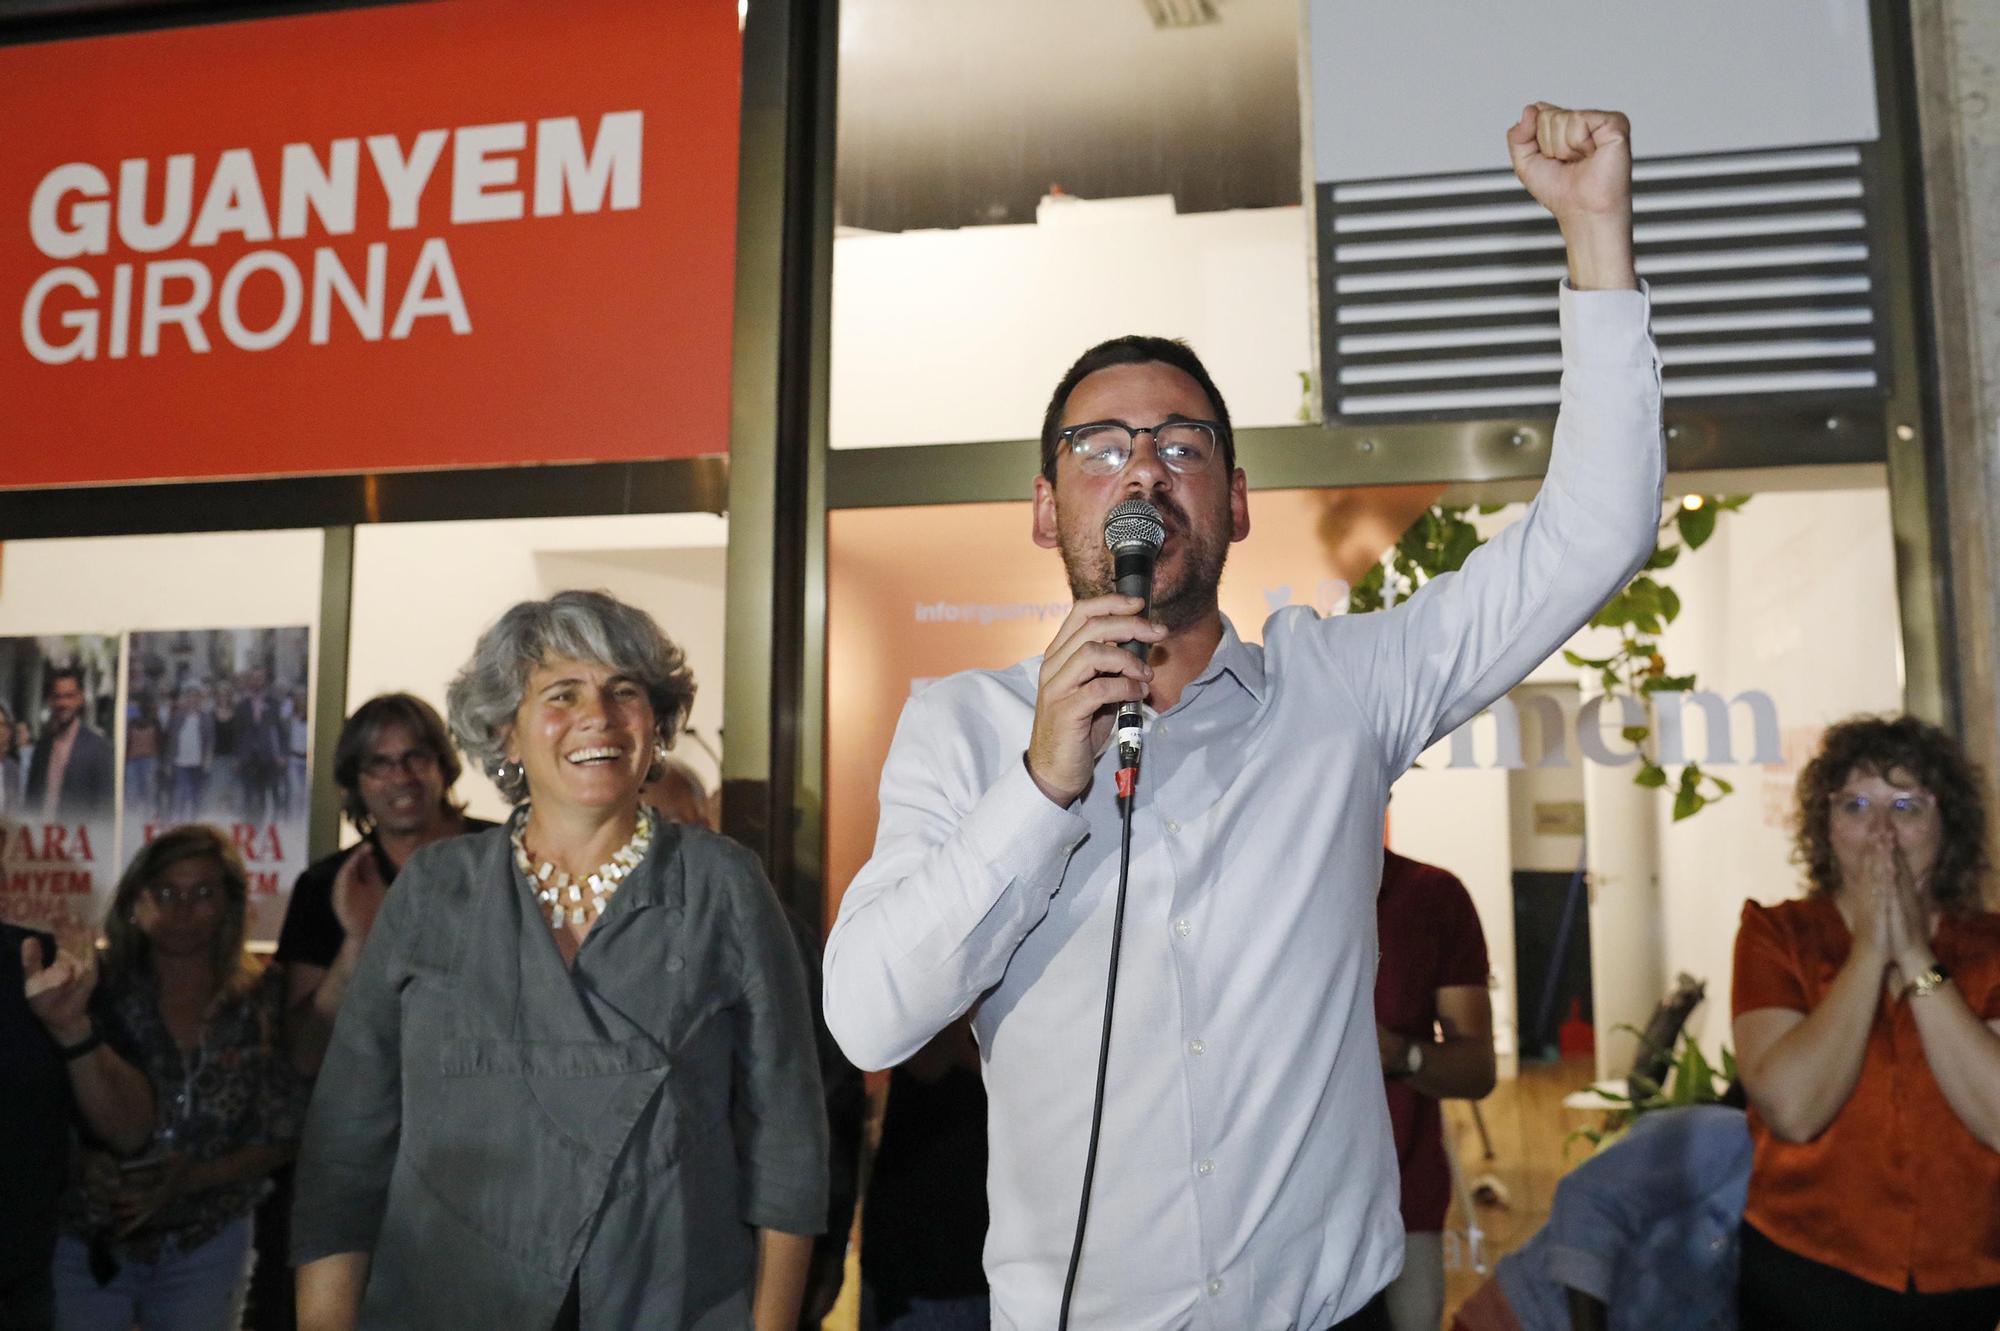 Guanyem Girona celebra els resultats a les eleccions municipals